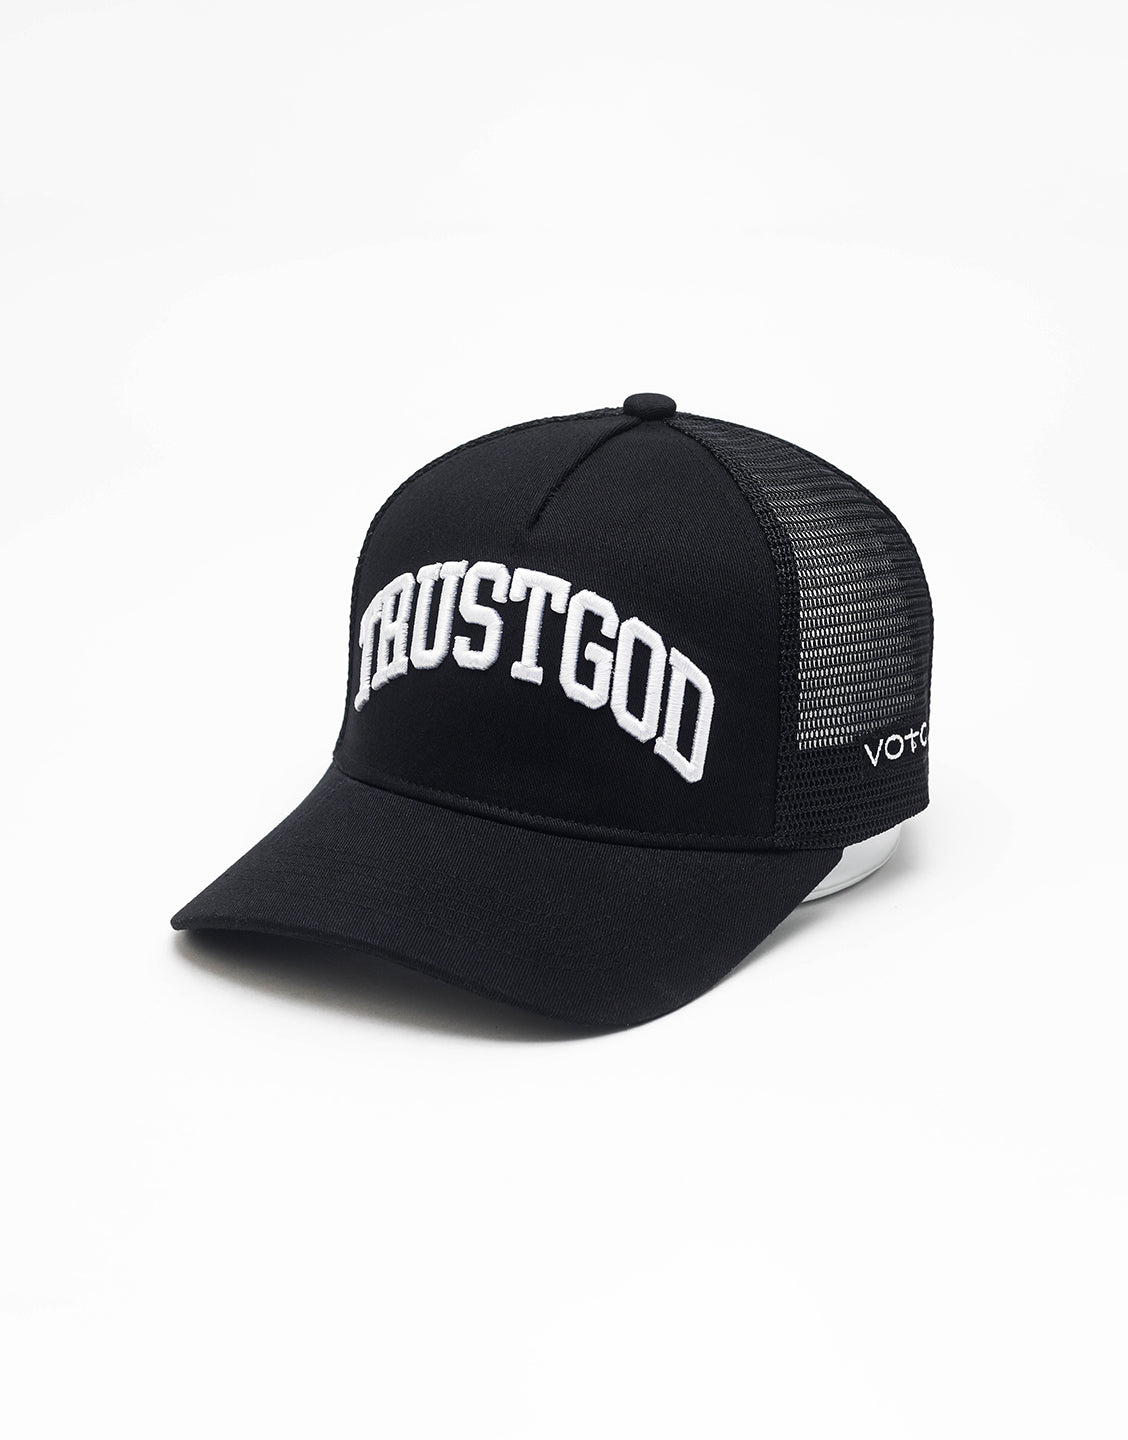 Trust God Premium Trucker Hat - Black